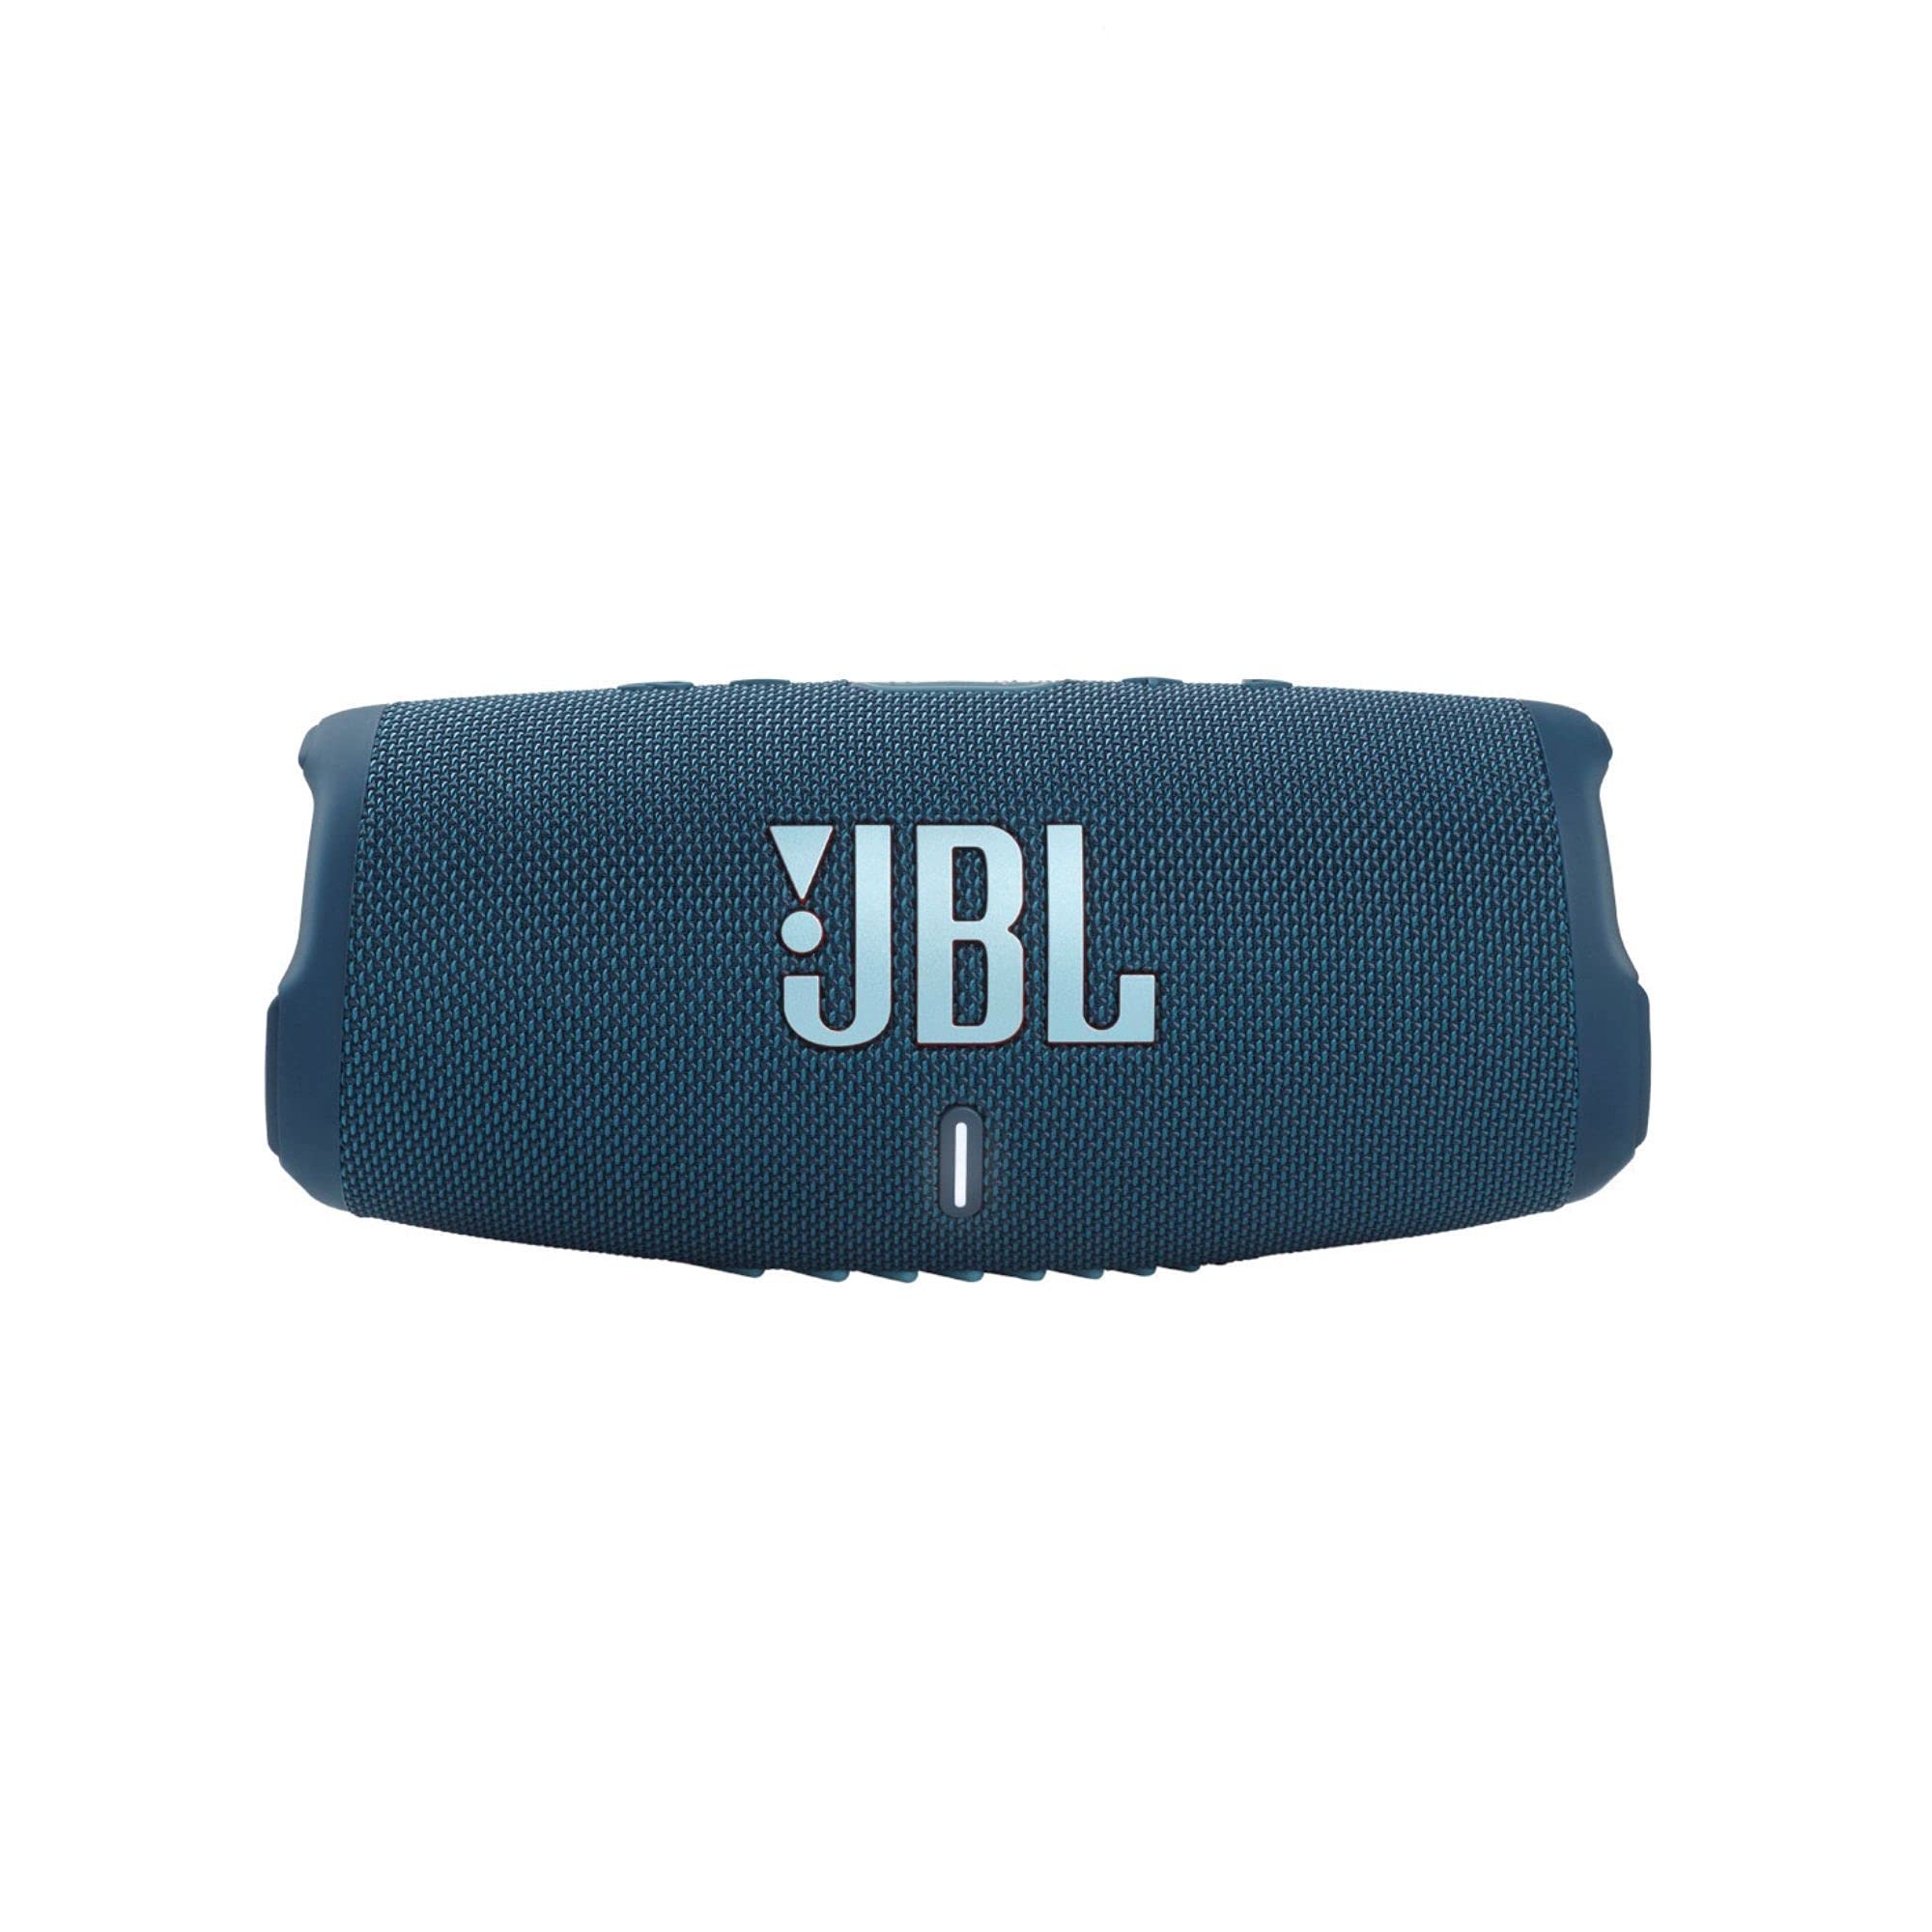 JBL Charge 5 — przenośny głośnik Bluetooth z wodoodpornością IP67 i wyjściem USB do ładowania — niebieski (odnowiony)